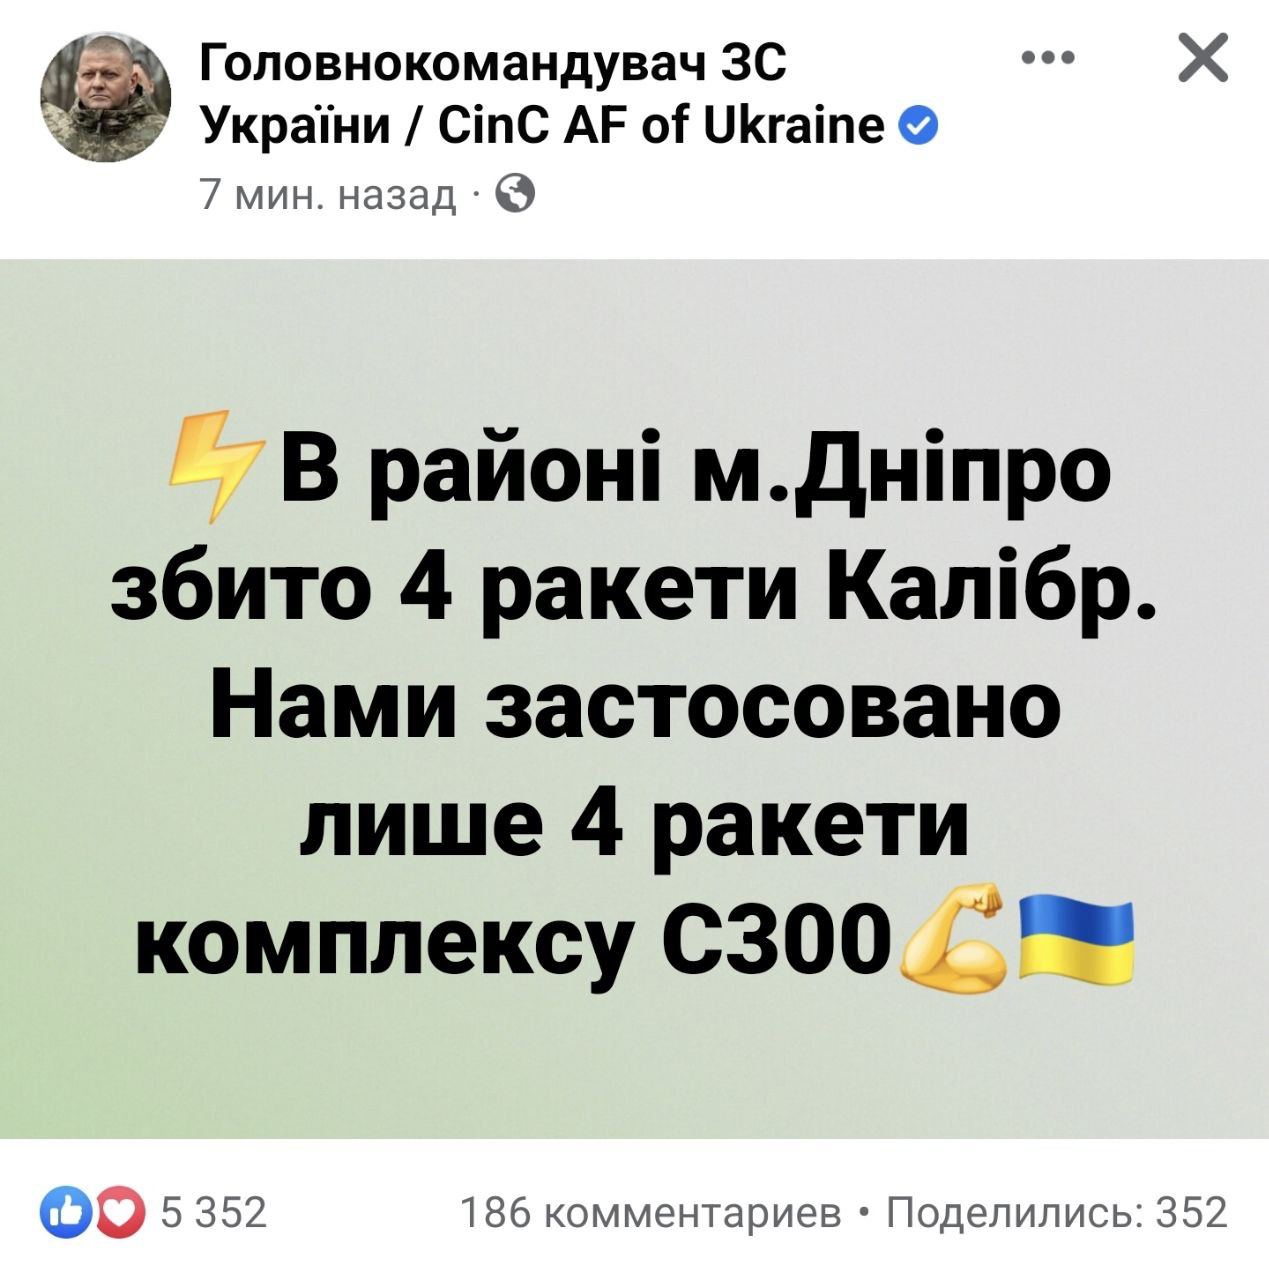 Украинские воины сбили все 4 ракеты над Днепром, применив всего лишь 4 ракеты комплекса С300, - главнокомандующий ВСУ Залужный💪